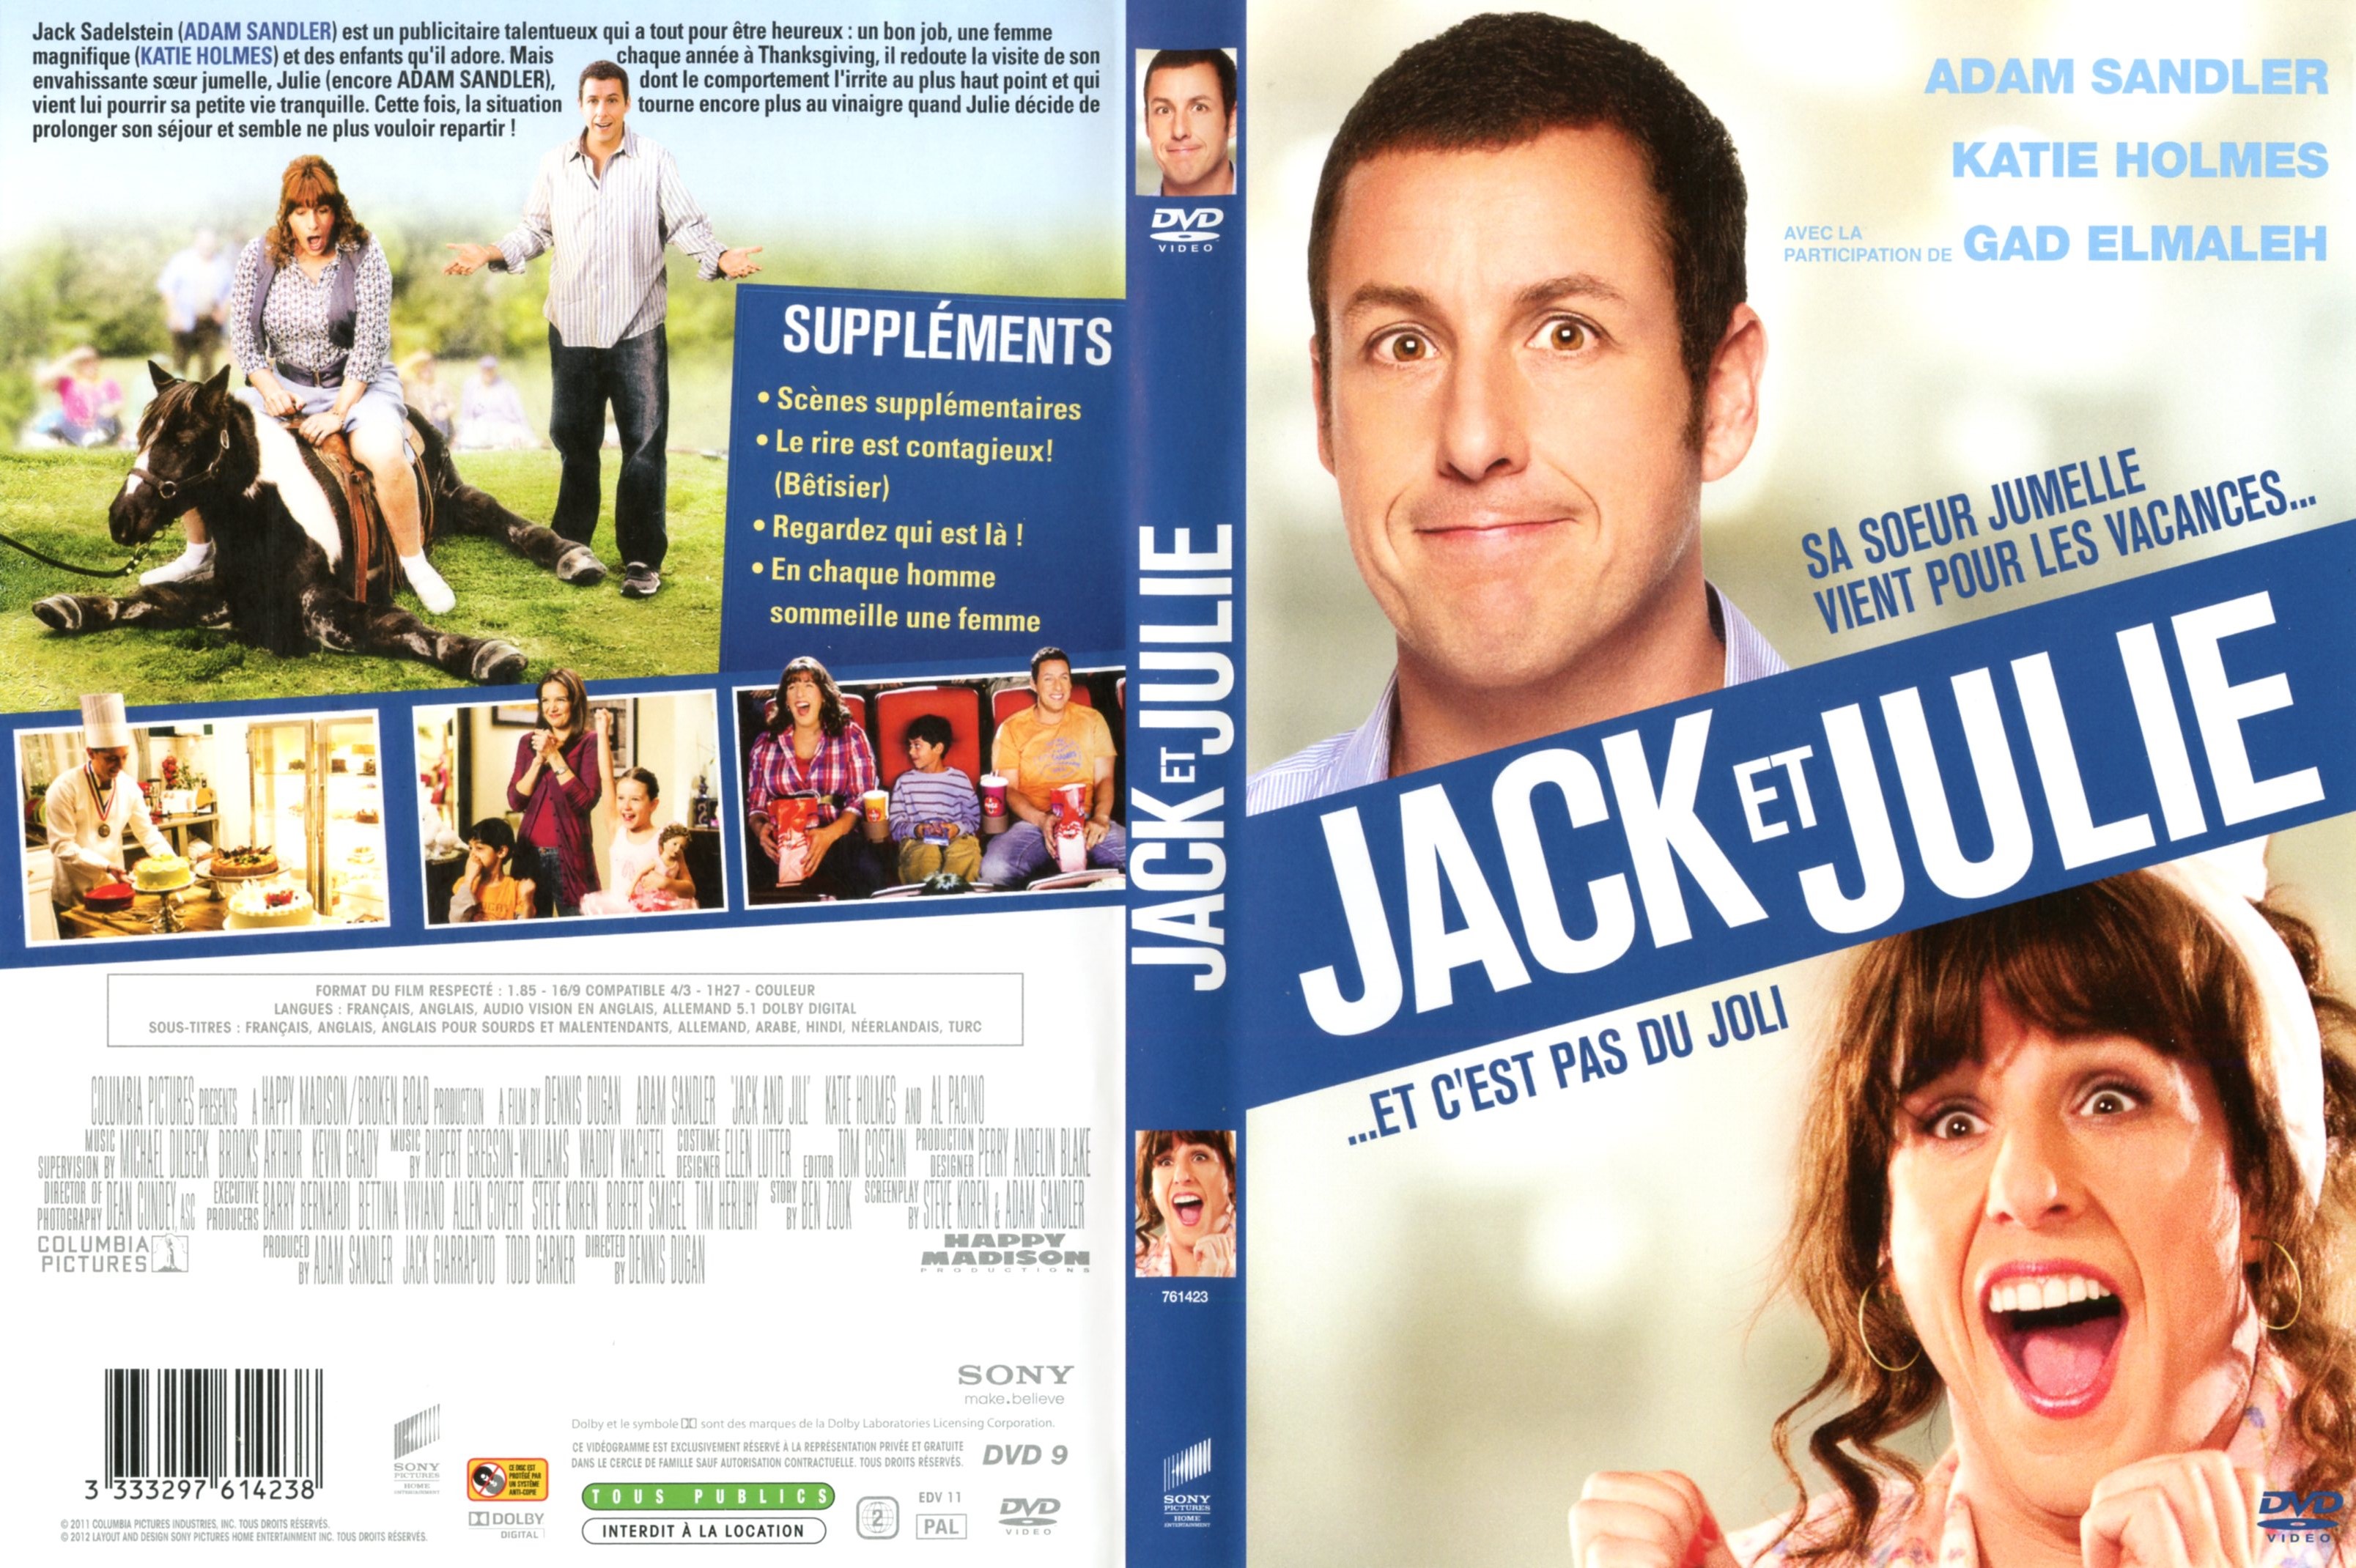 Jaquette Dvd De Jack Et Julie Cinéma Passion